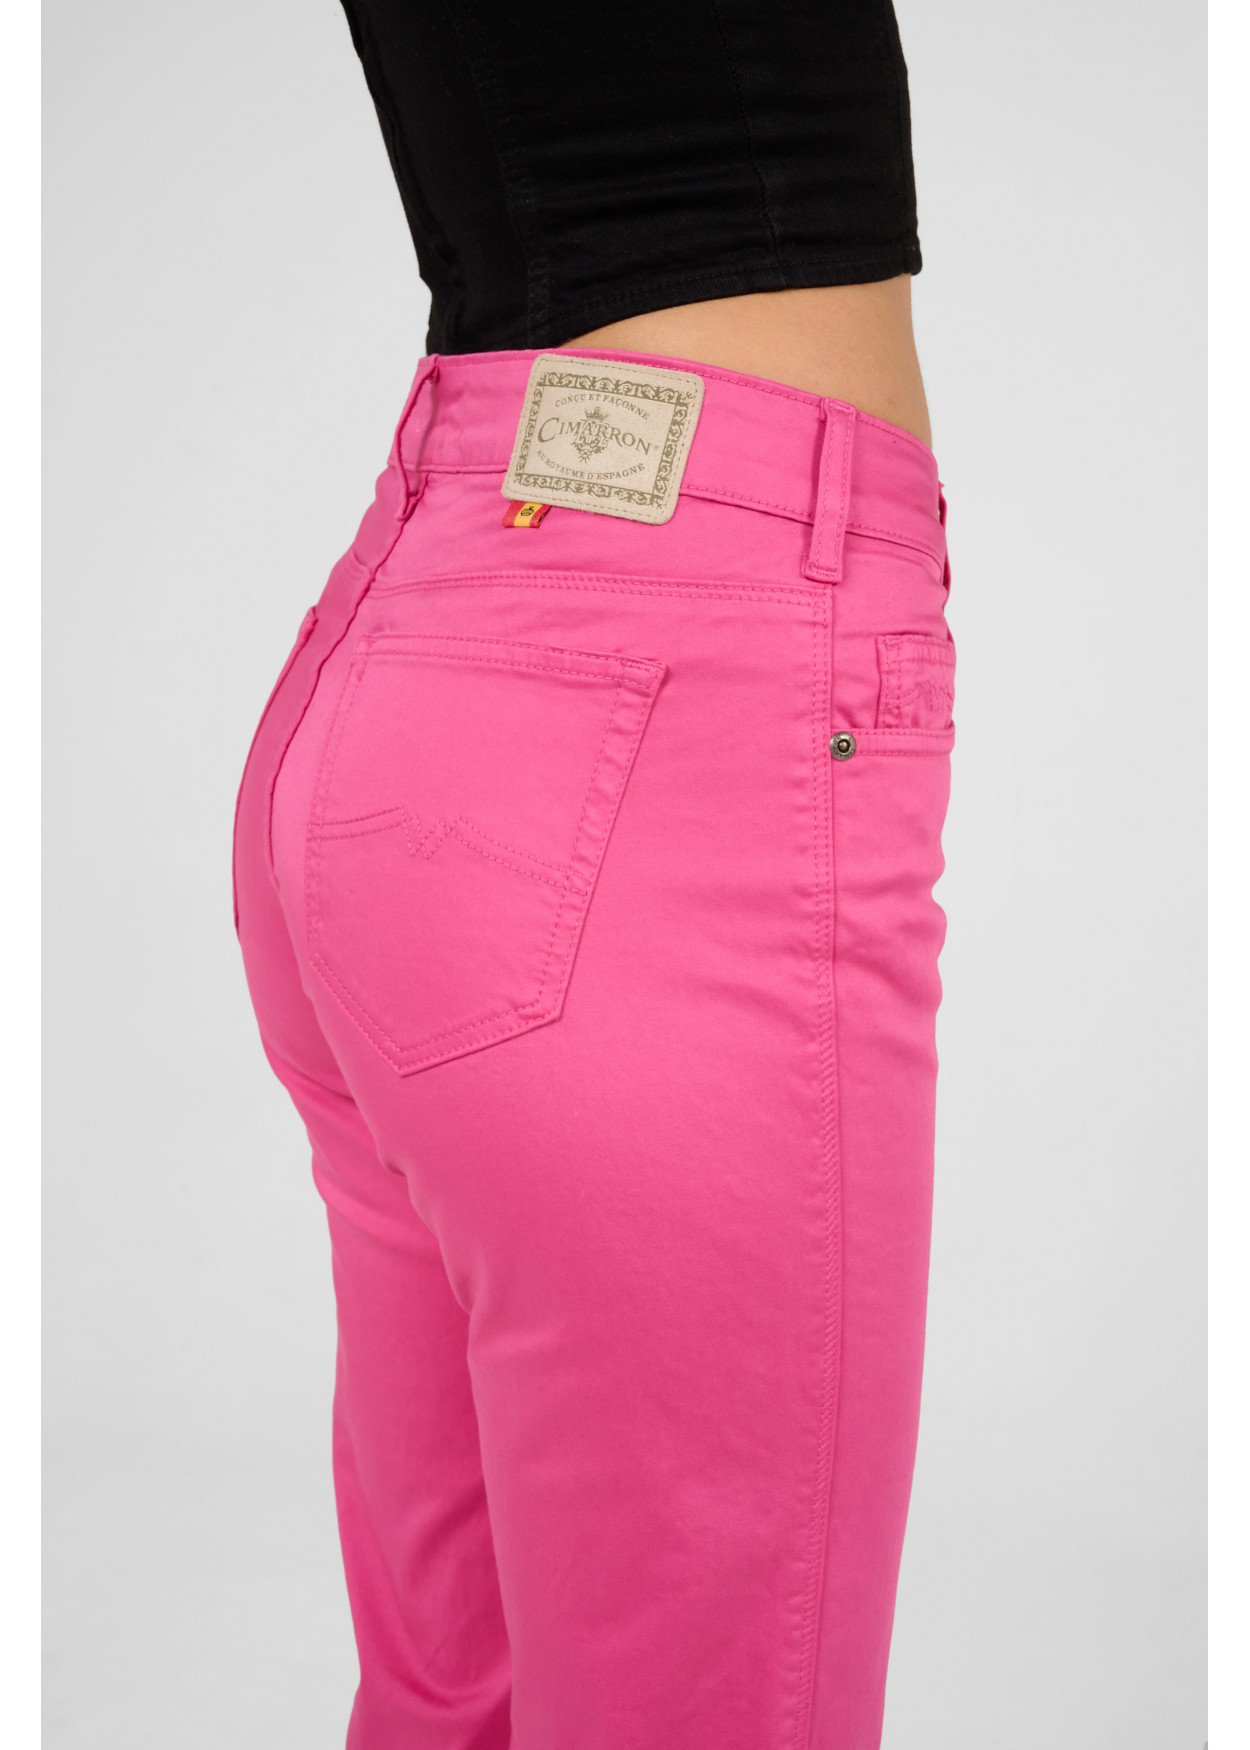 CLAUDIA-NECTAR - Pantalon de couleur - Pantalon évasé - Short long en satin élastique | Tailles en pouces Cimarron